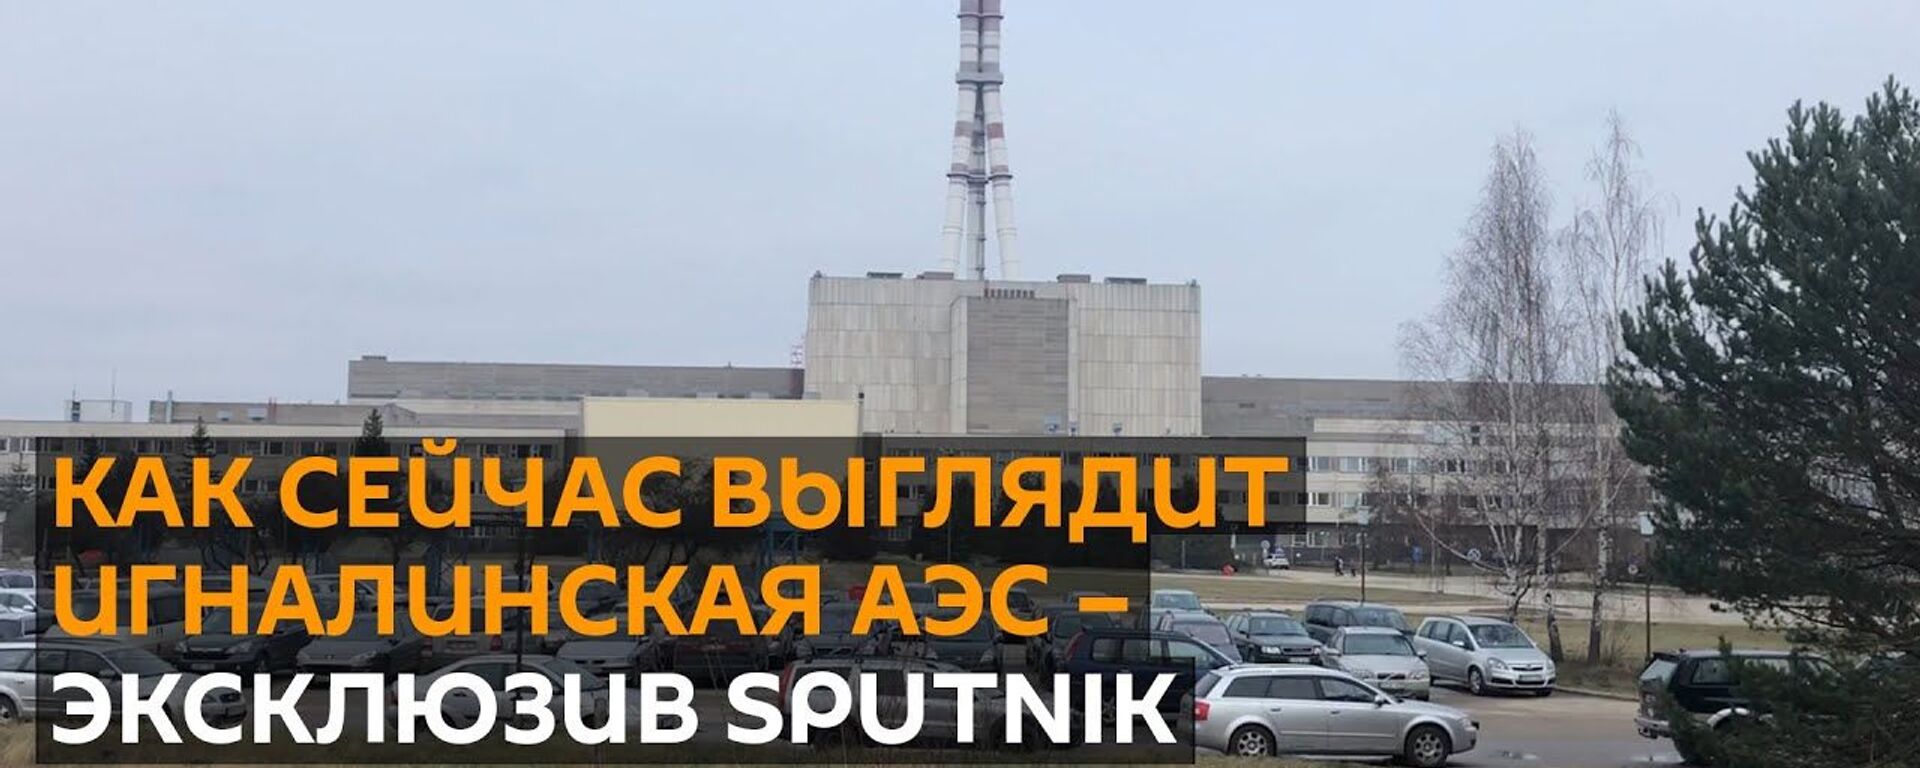 Игналинская АЭС: эксклюзив Sputnik c самой мощной атомной электростанции СССР - Sputnik Абхазия, 1920, 21.01.2020